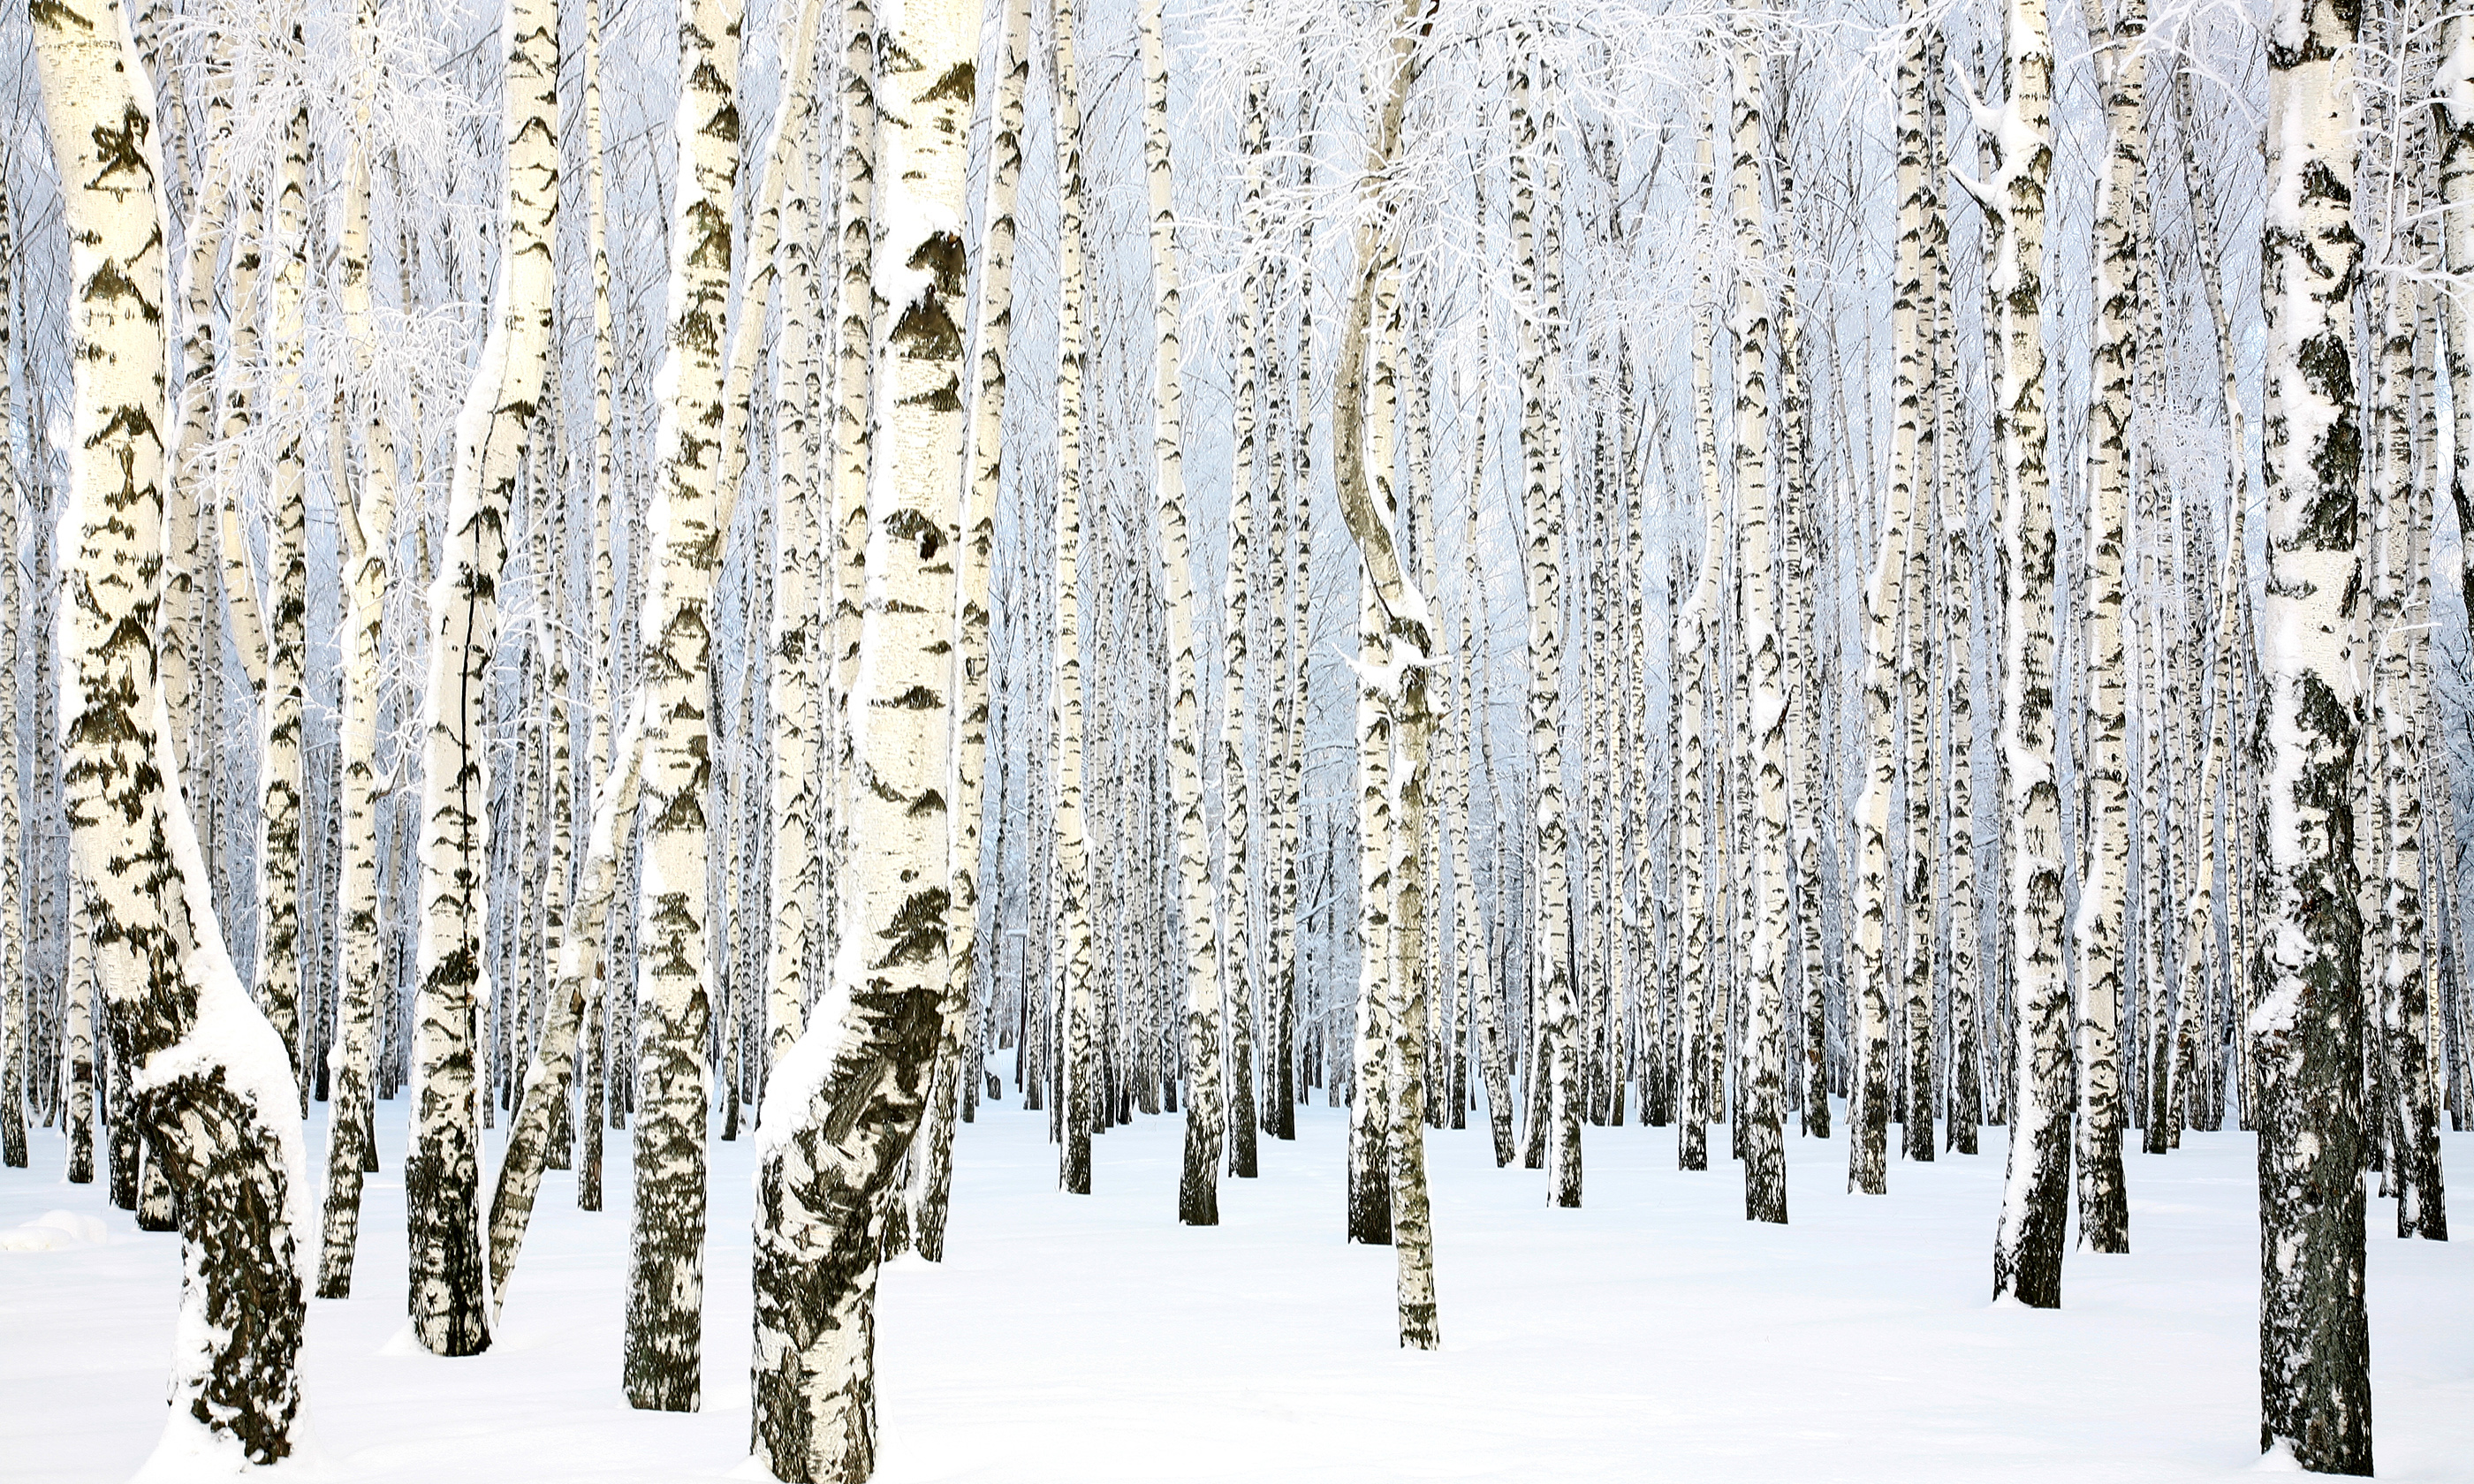 Russian birch grove (Shutterstock.com)